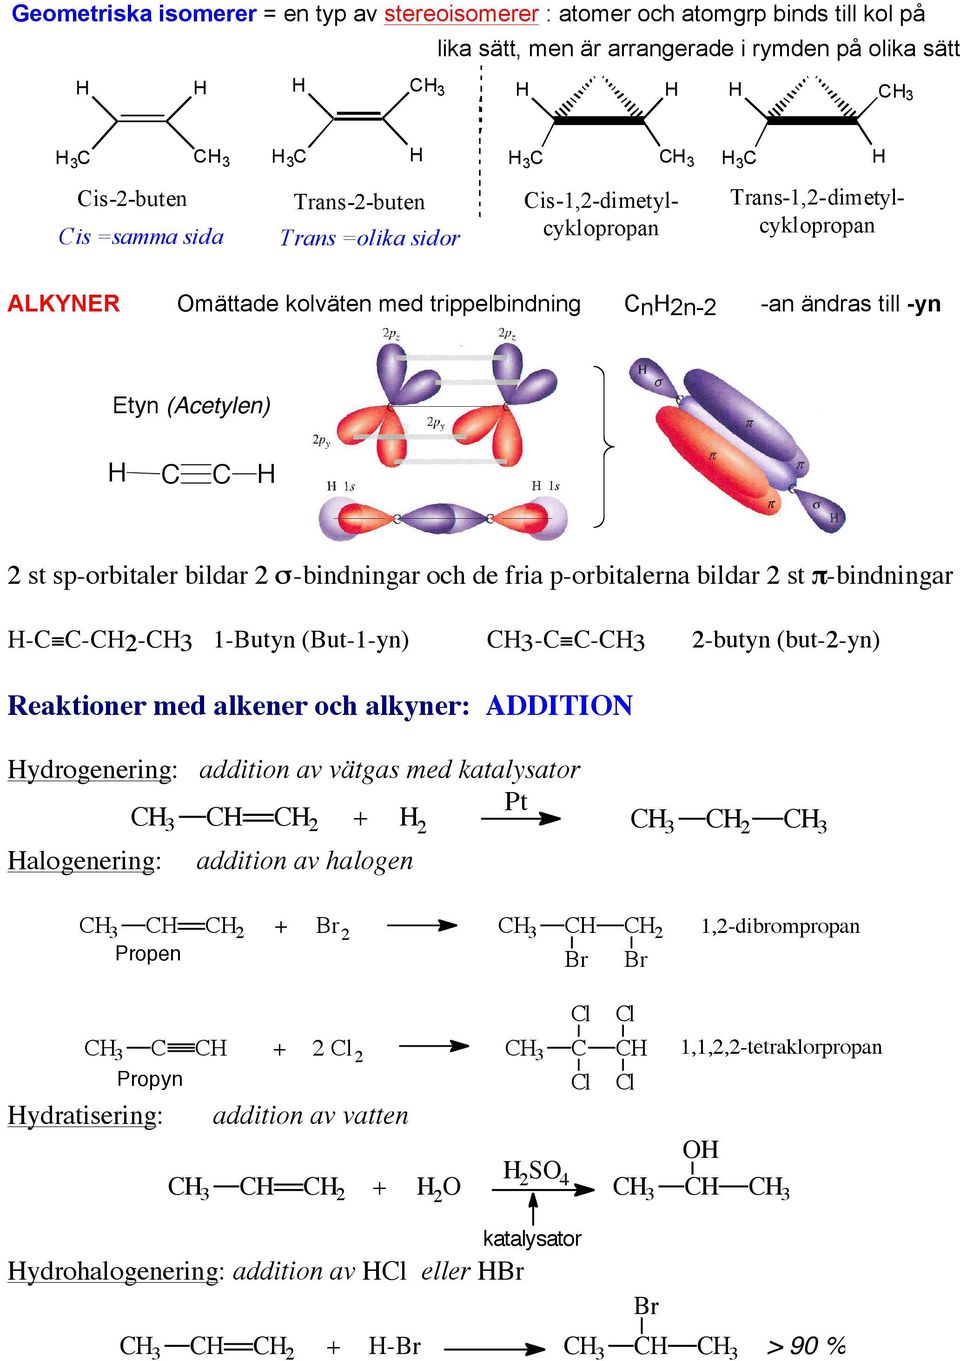 σ-bindningar och de fria p-orbitalerna bildar 2 st π-bindningar - -2-3 1-Butyn (But-1-yn) 3- -3 2-butyn (but-2-yn) Reaktioner med alkener och alkyner: ADDITION ydrogenering: addition av vätgas med